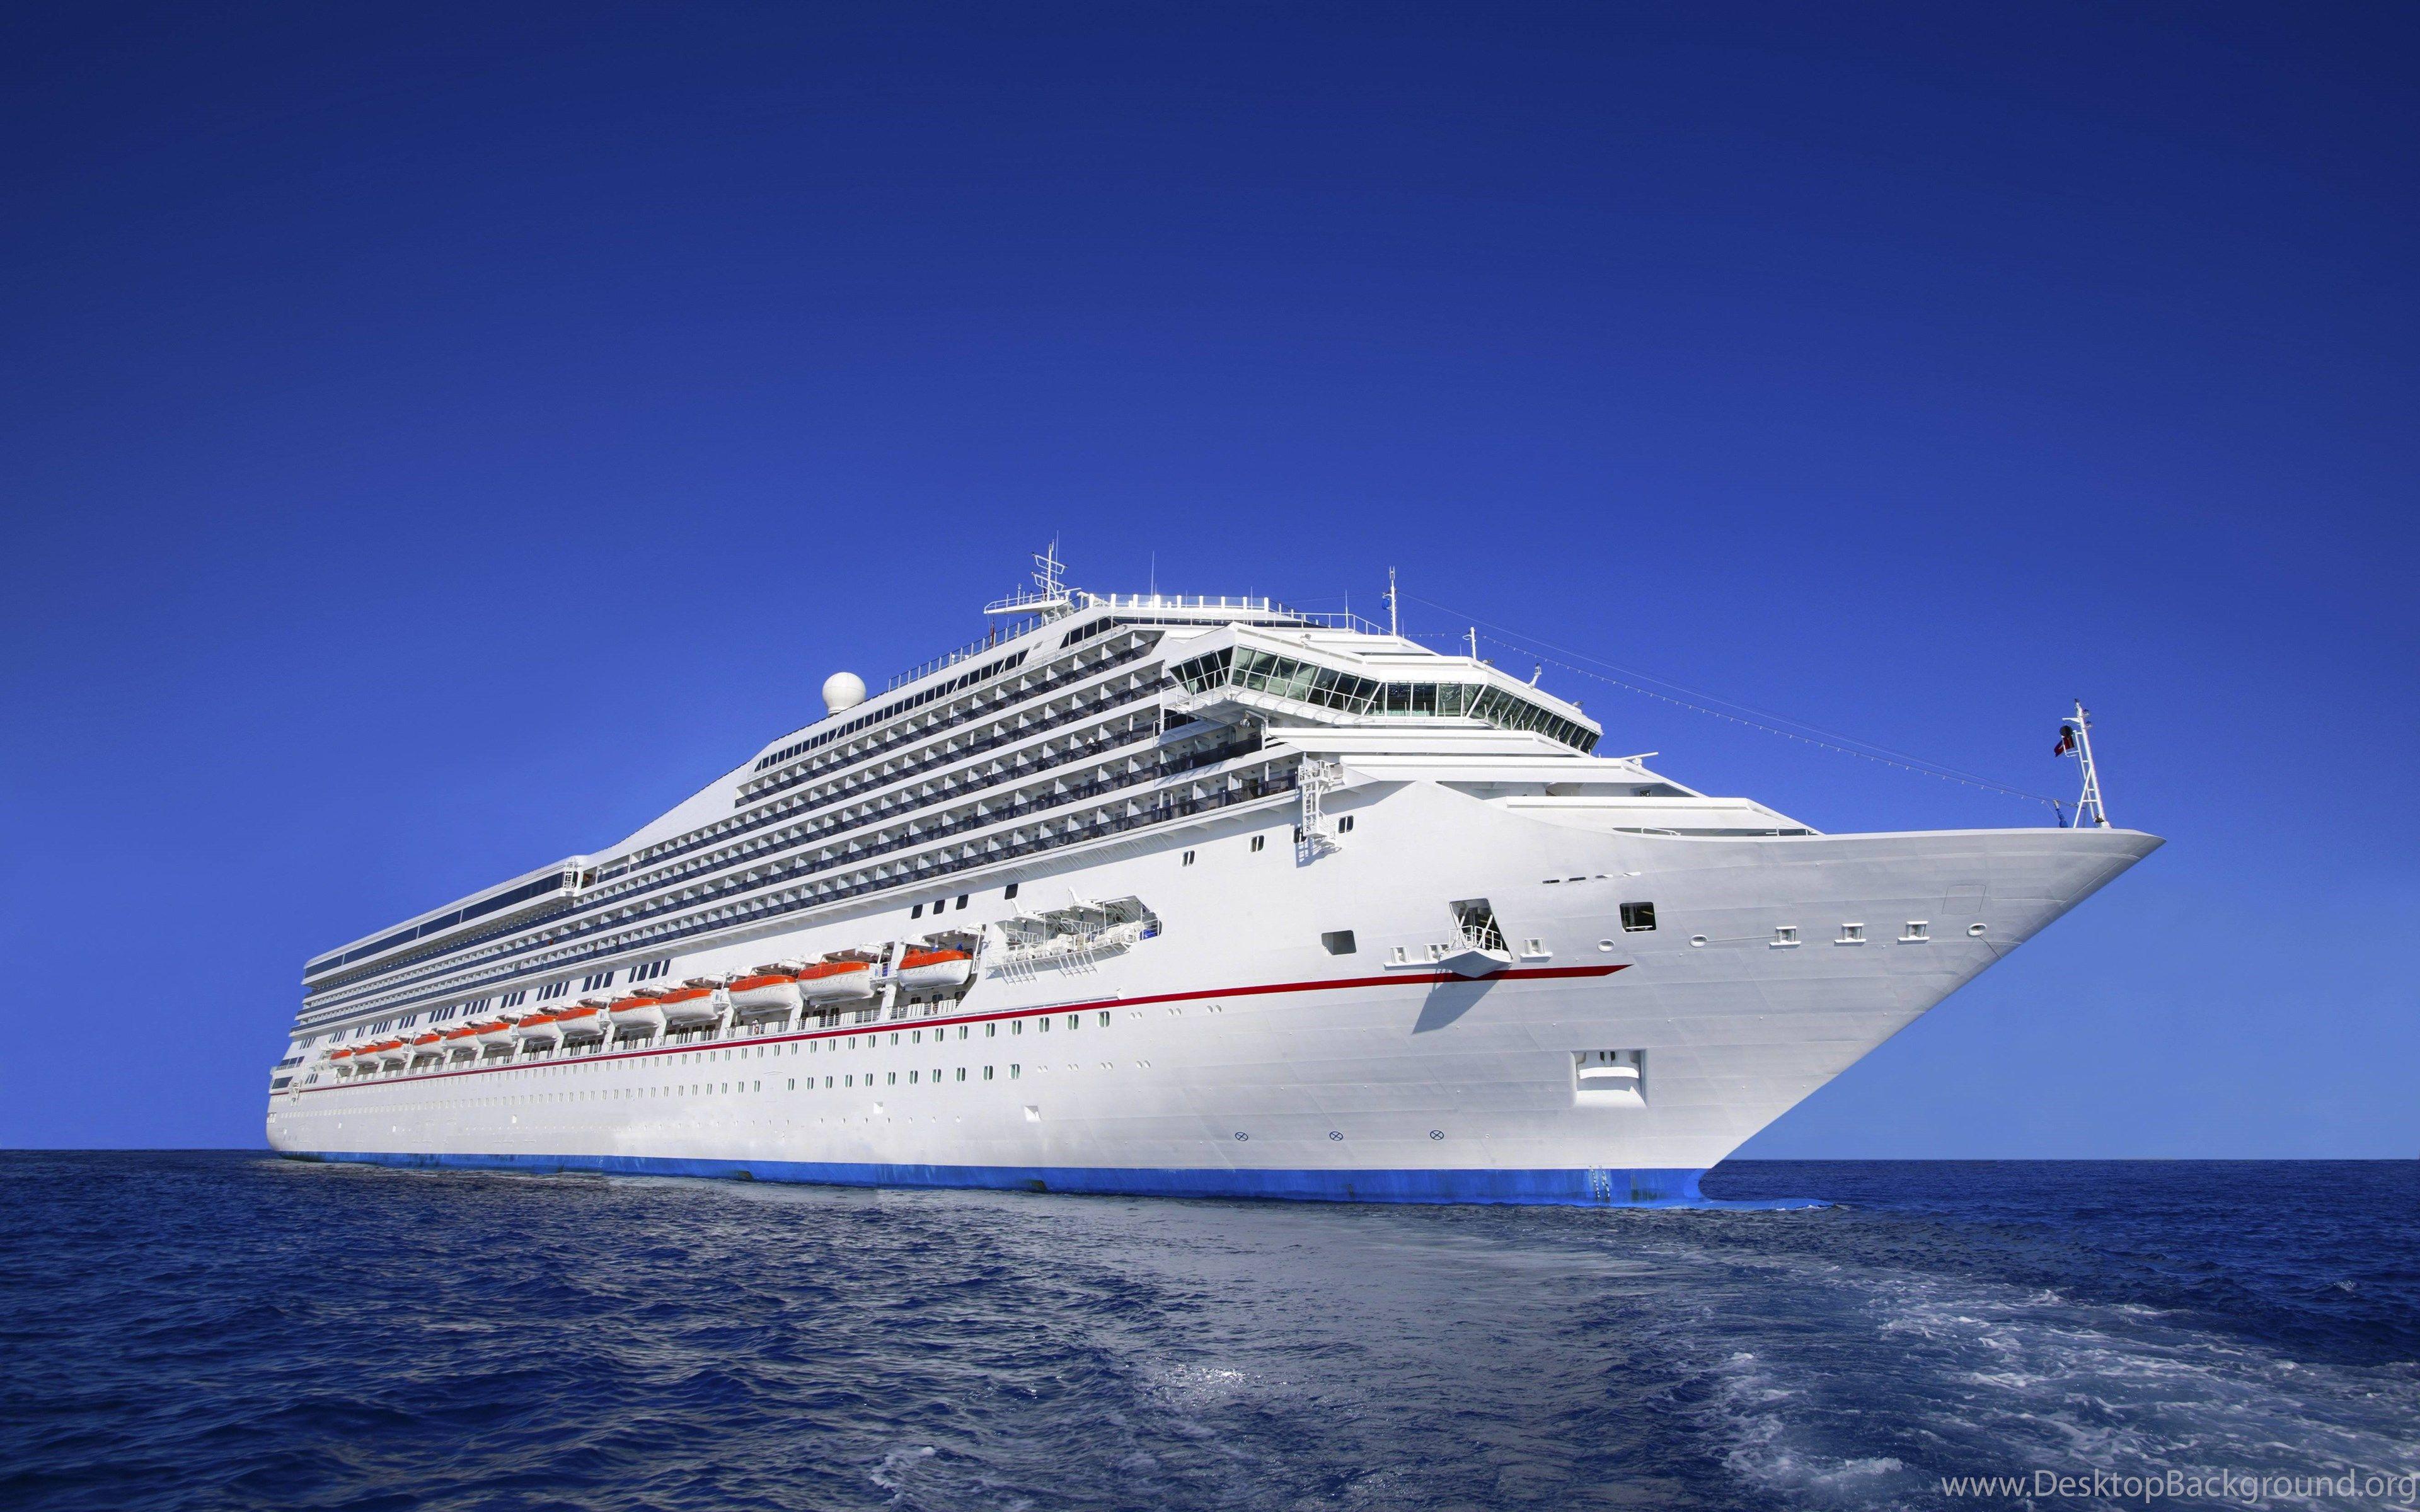 cruise ship background images